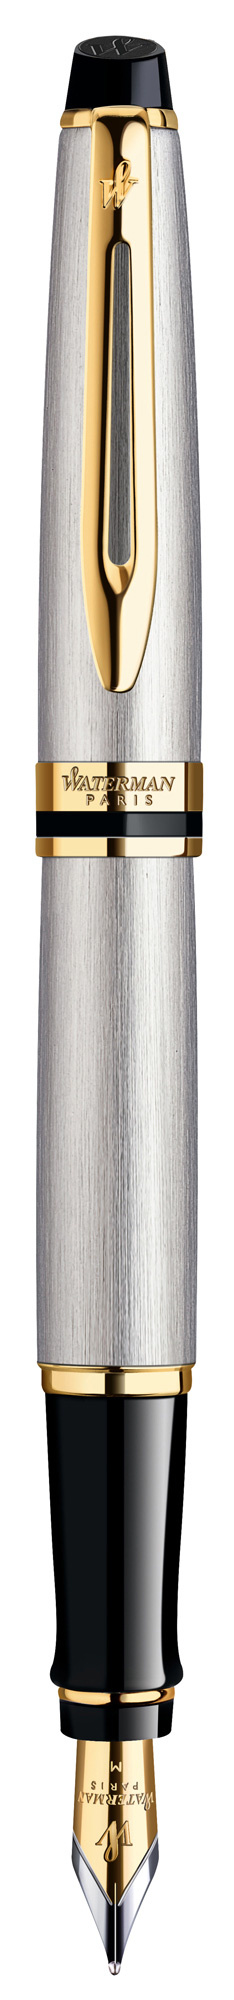 Ручка перьевая Waterman Expert 3, синий, сталь нержавеющая, колпачок, подарочная упаковка (CWS0951940)